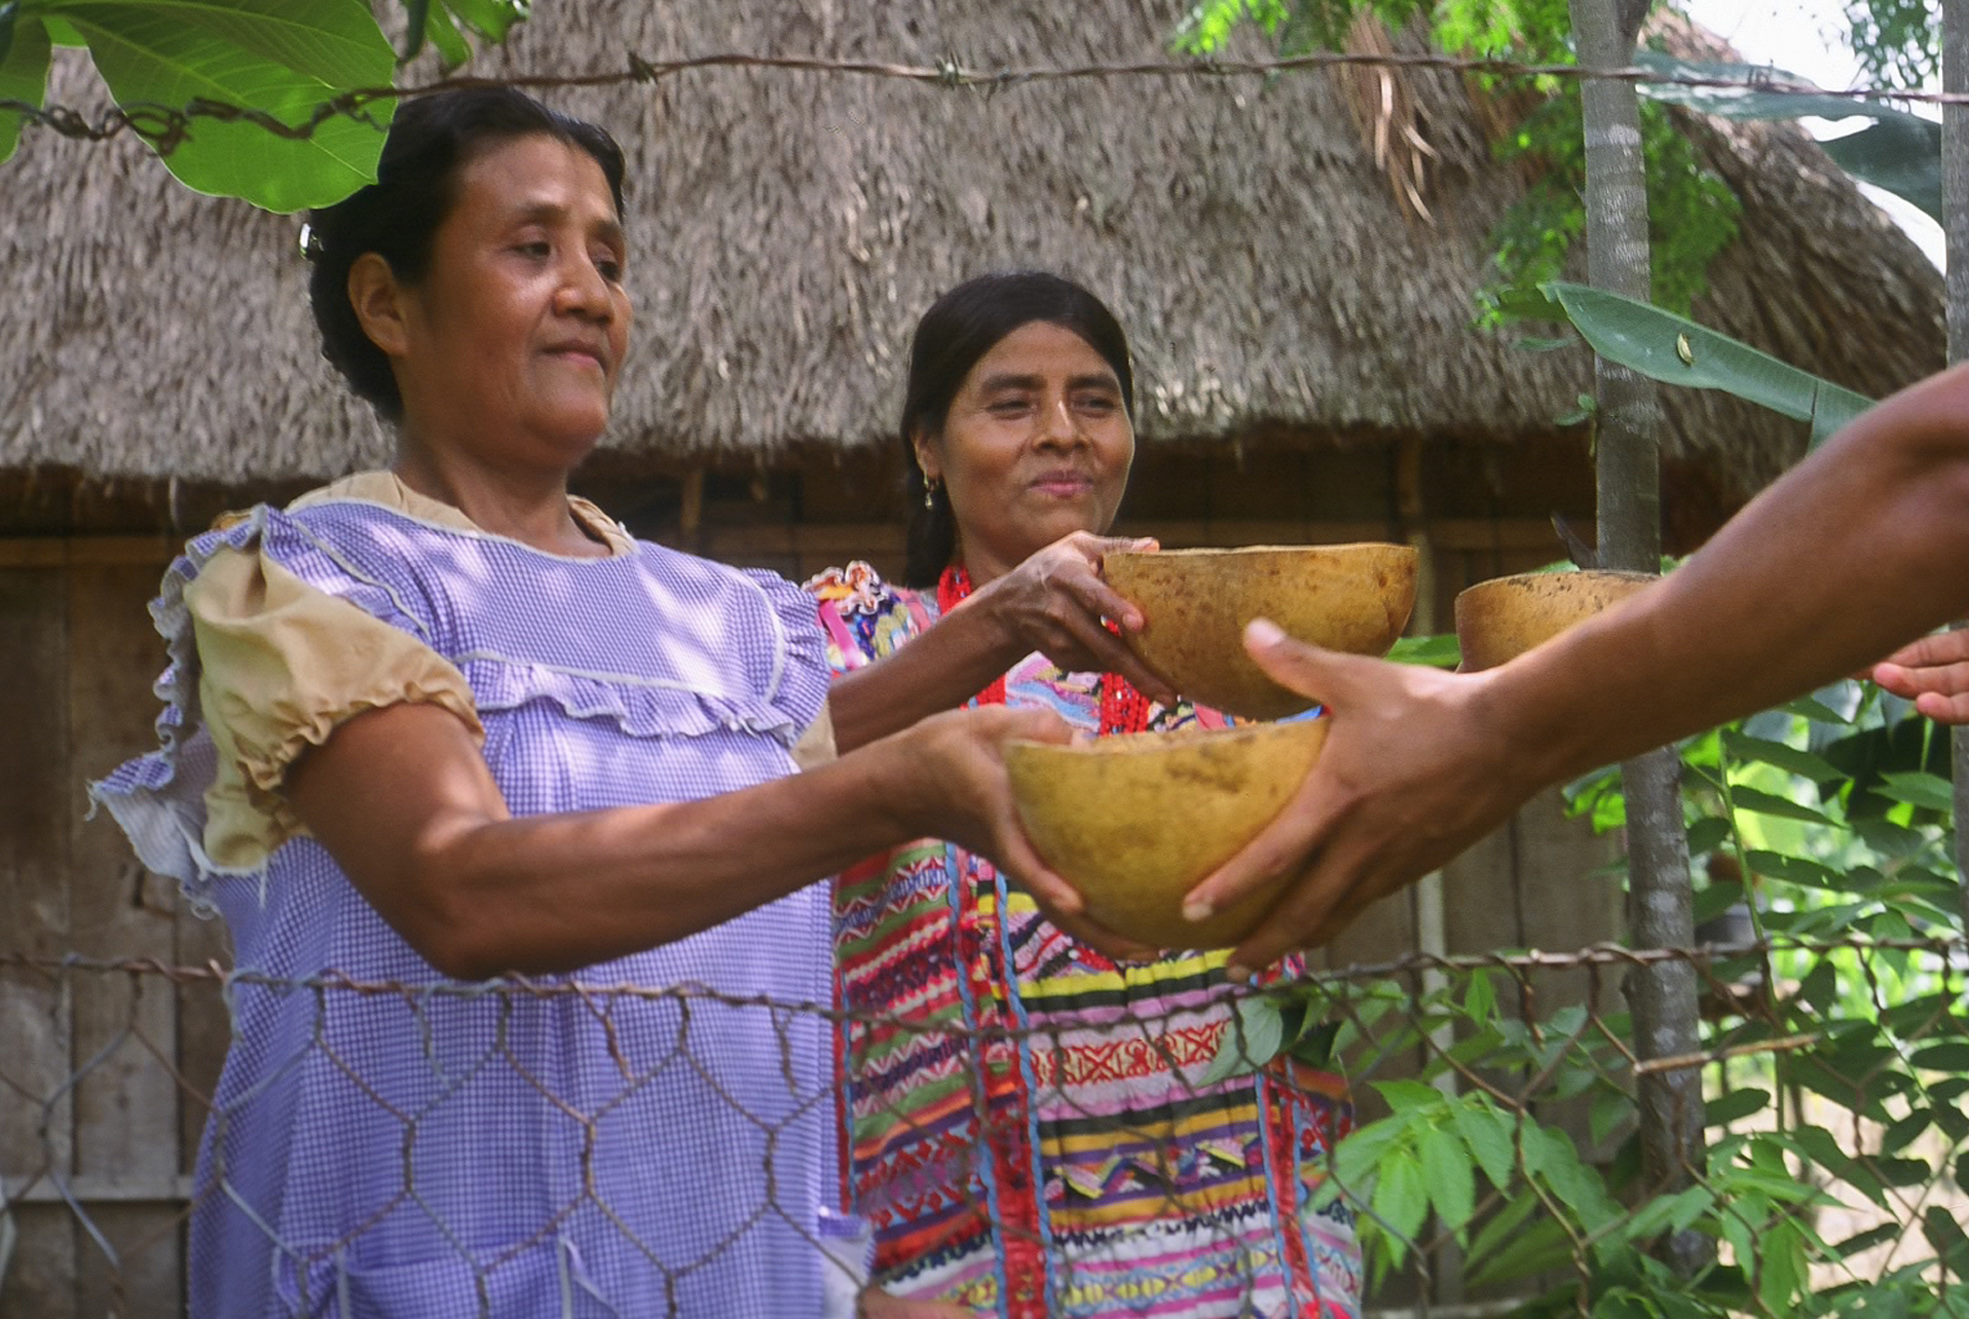 Vista general de dos mujeres indígenas dando recipientes-bandejas en localidad natural.